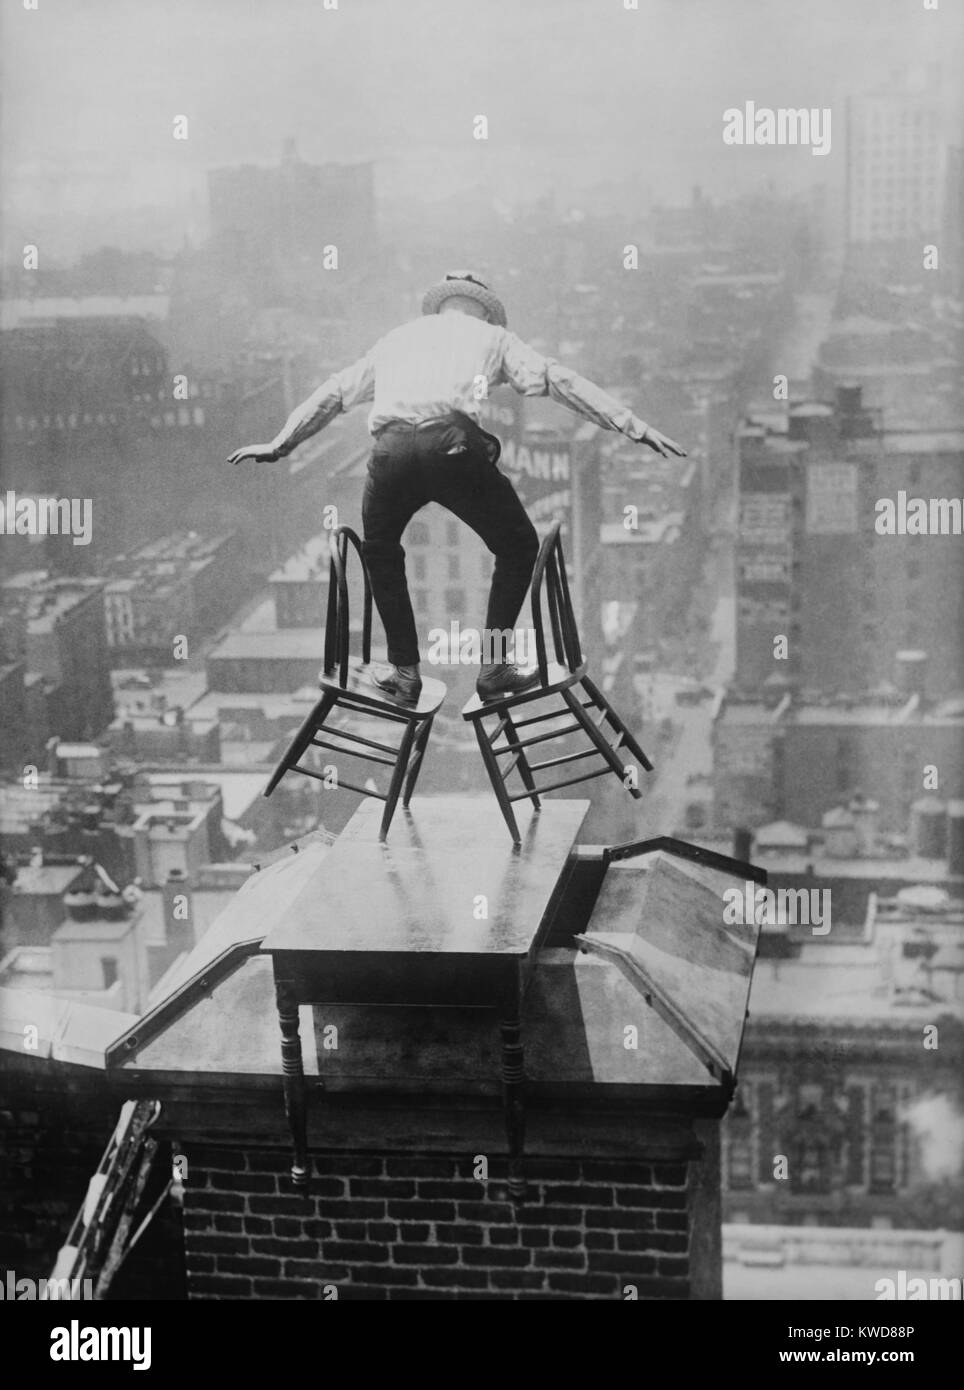 'Umano volare' Giovanni "Jammie' saldi di Reynolds precariamente su due sedie inclinato. L'OSA-diavolo è sul bordo del tetto di un alto edificio di Manhattan, appollaiato su un tavolo posto sopra un camino. Ca. 1915-1920. (BSLOC 2015 17 170) Foto Stock